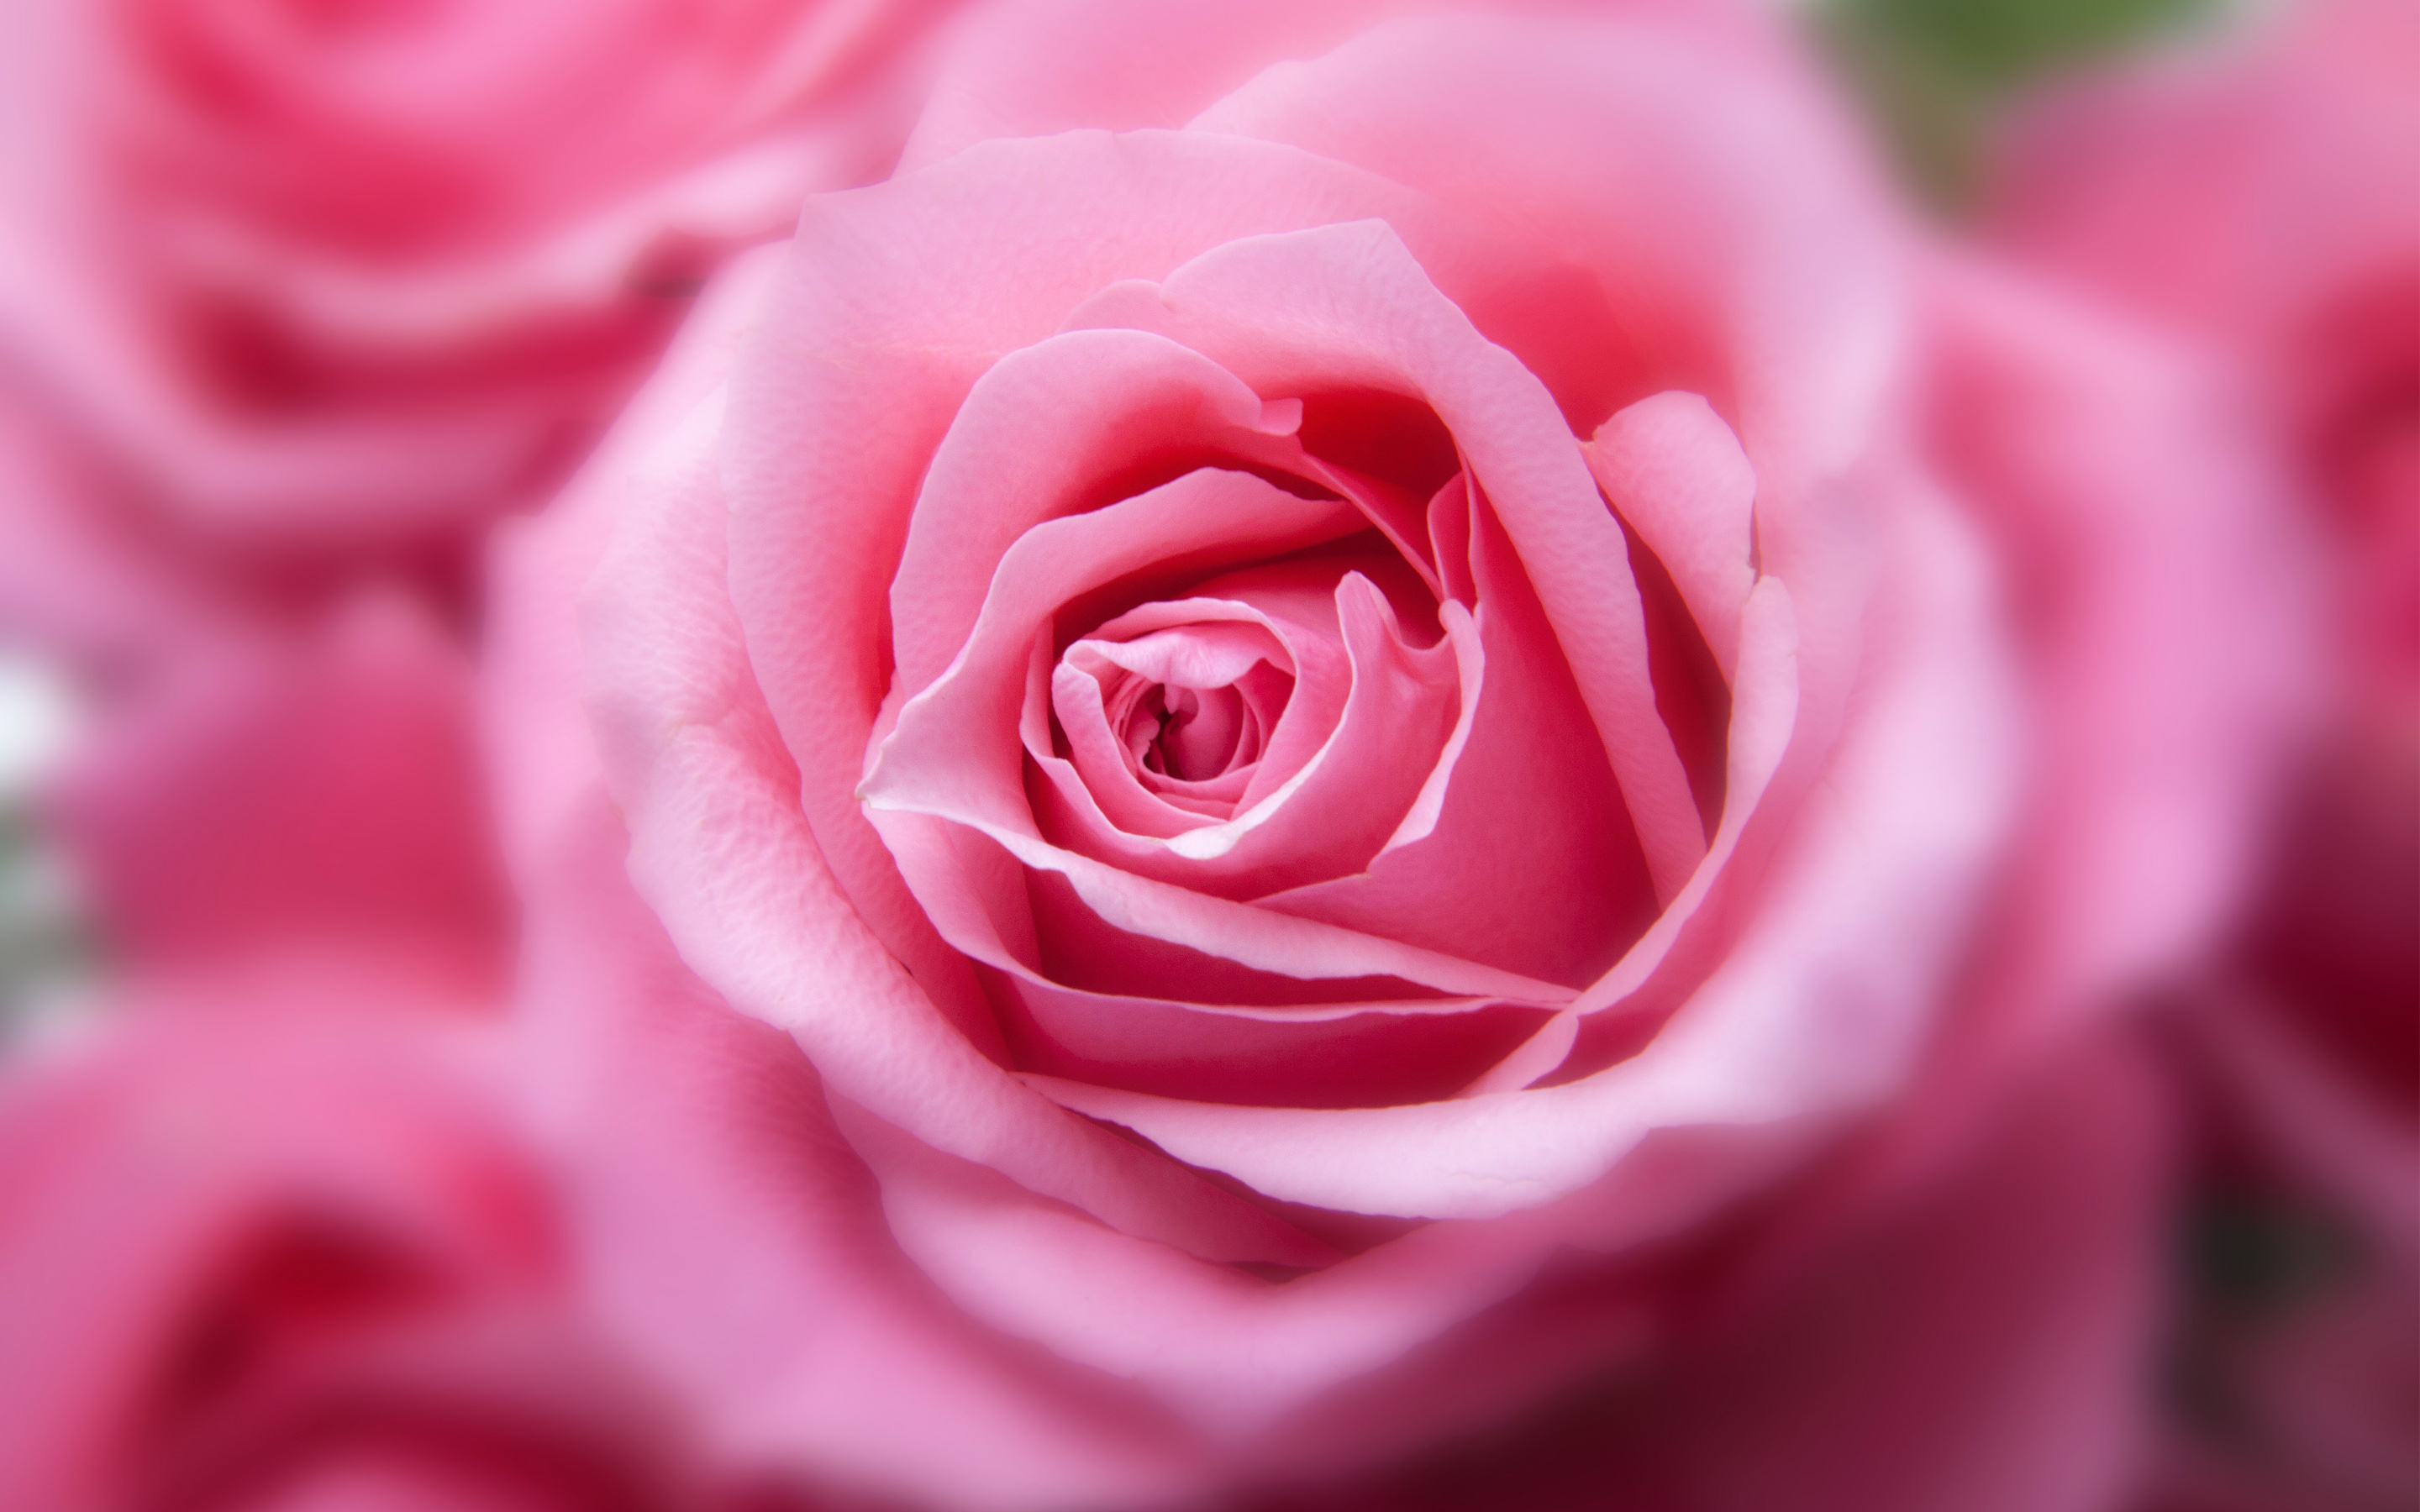 rosentapete hd,blume,gartenrosen,blühende pflanze,rose,rosa